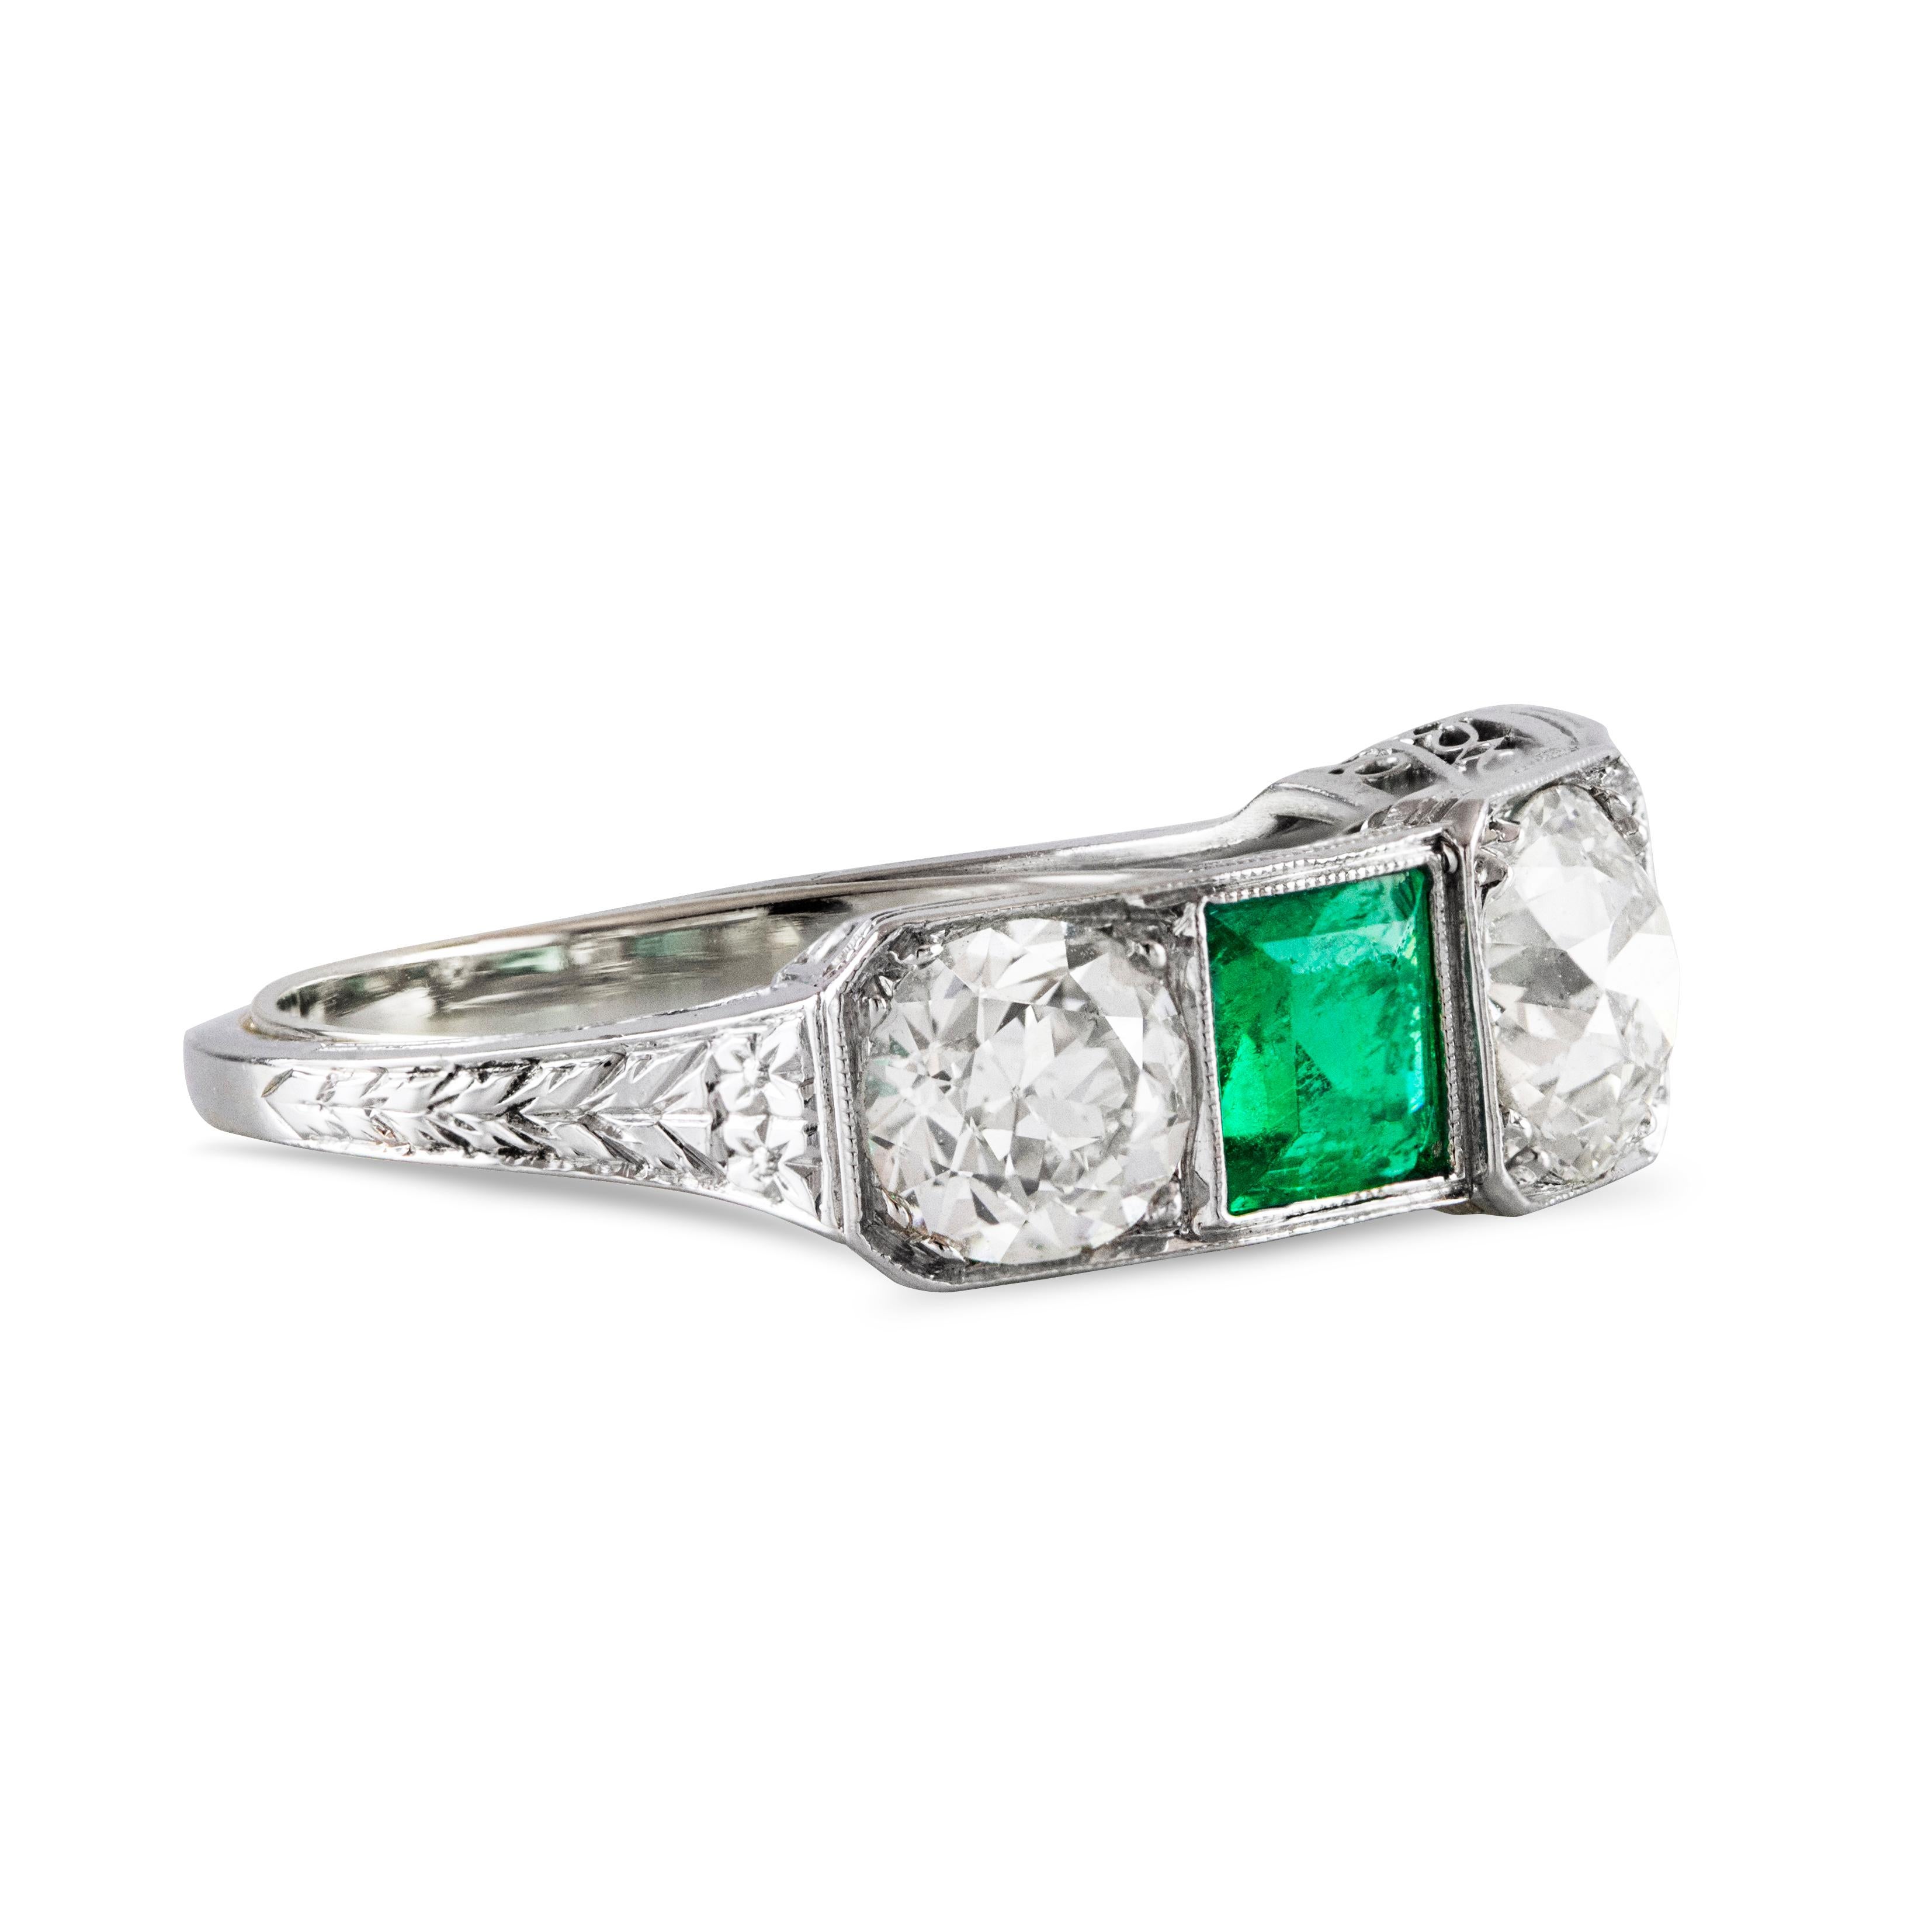 Dieser wunderschöne Vintage-Ring besteht aus drei Diamanten im alteuropäischen Schliff mit einem Gesamtgewicht von 2,15 Karat, die sich elegant mit einem grünen Smaragd im Quadratschliff abwechseln, der insgesamt 0,97 Karat wiegt. Hergestellt aus